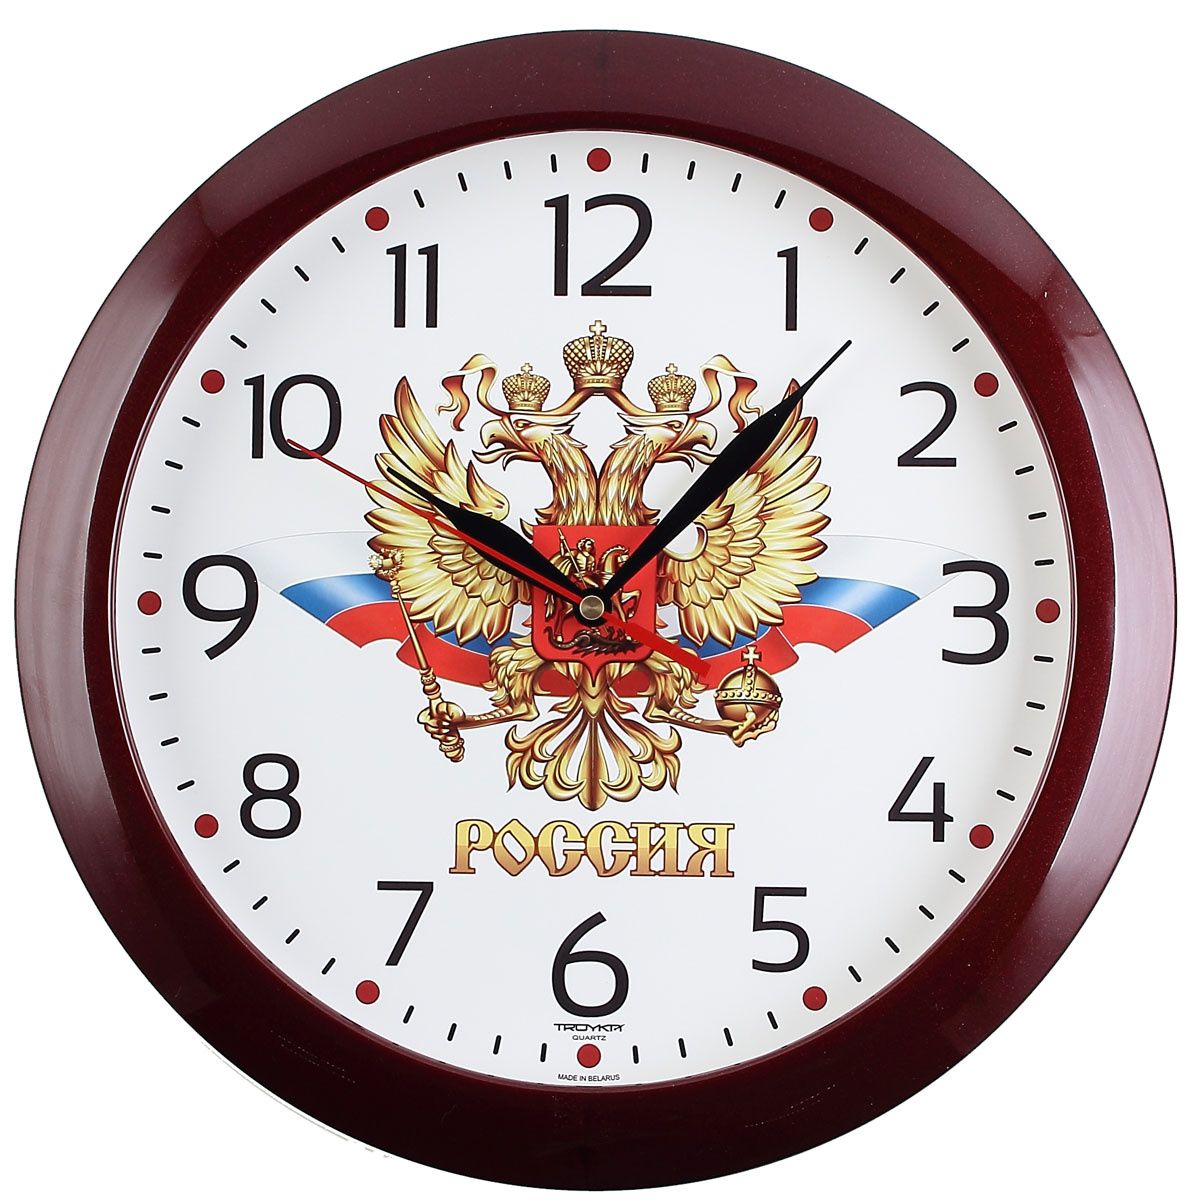 Г рязань часы. Настенные часы Troyka 11110198. Часы настенные Troyka 11100112. Настенные часы Troyka 51510511. Настенные часы тройка 11121161.